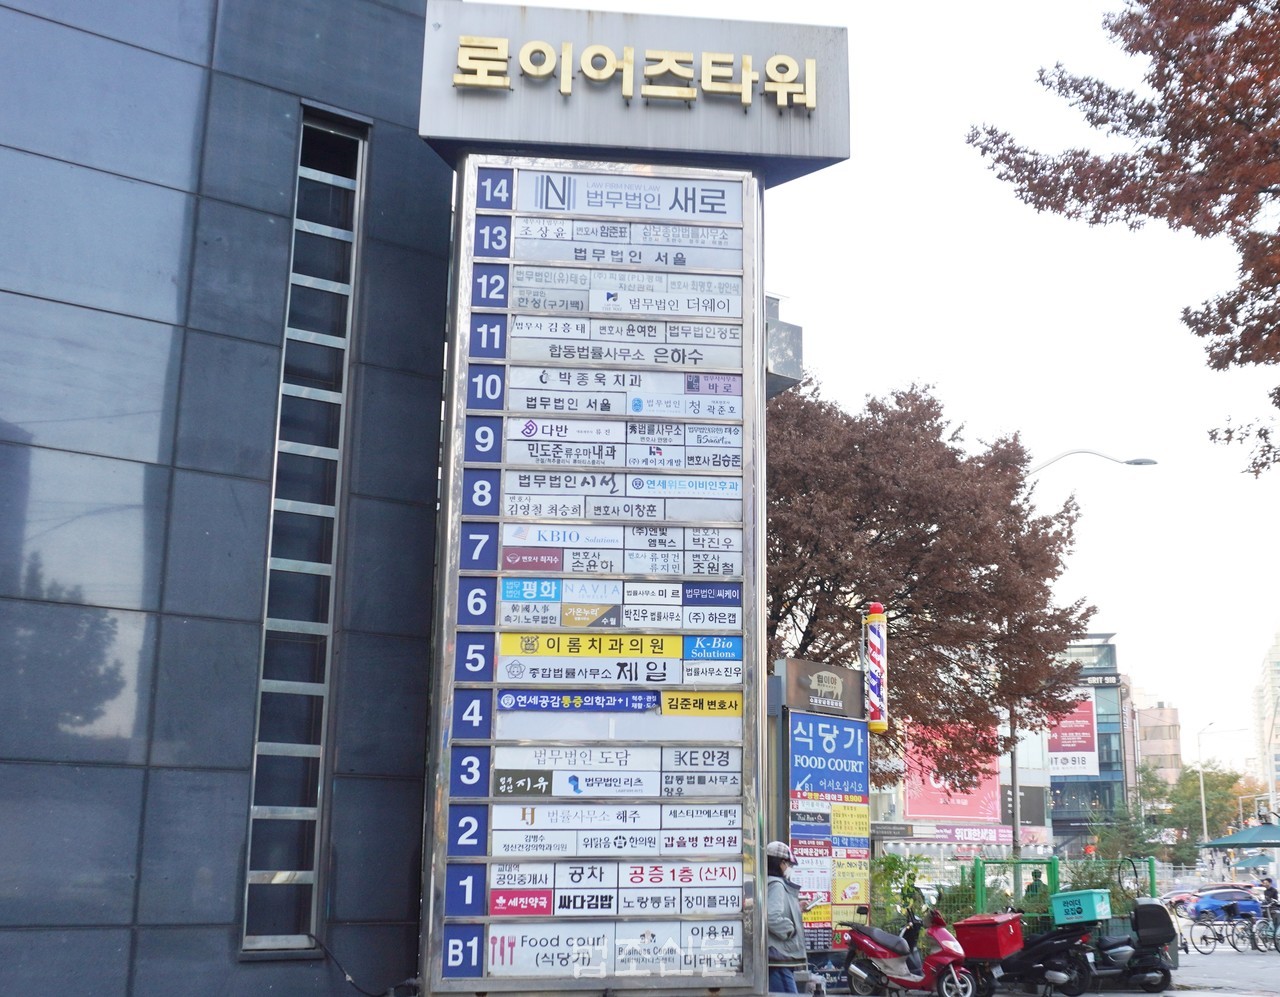 △ 다양한 법무법인 등이 위치한 서울 서초구 로이어스타워의 모습